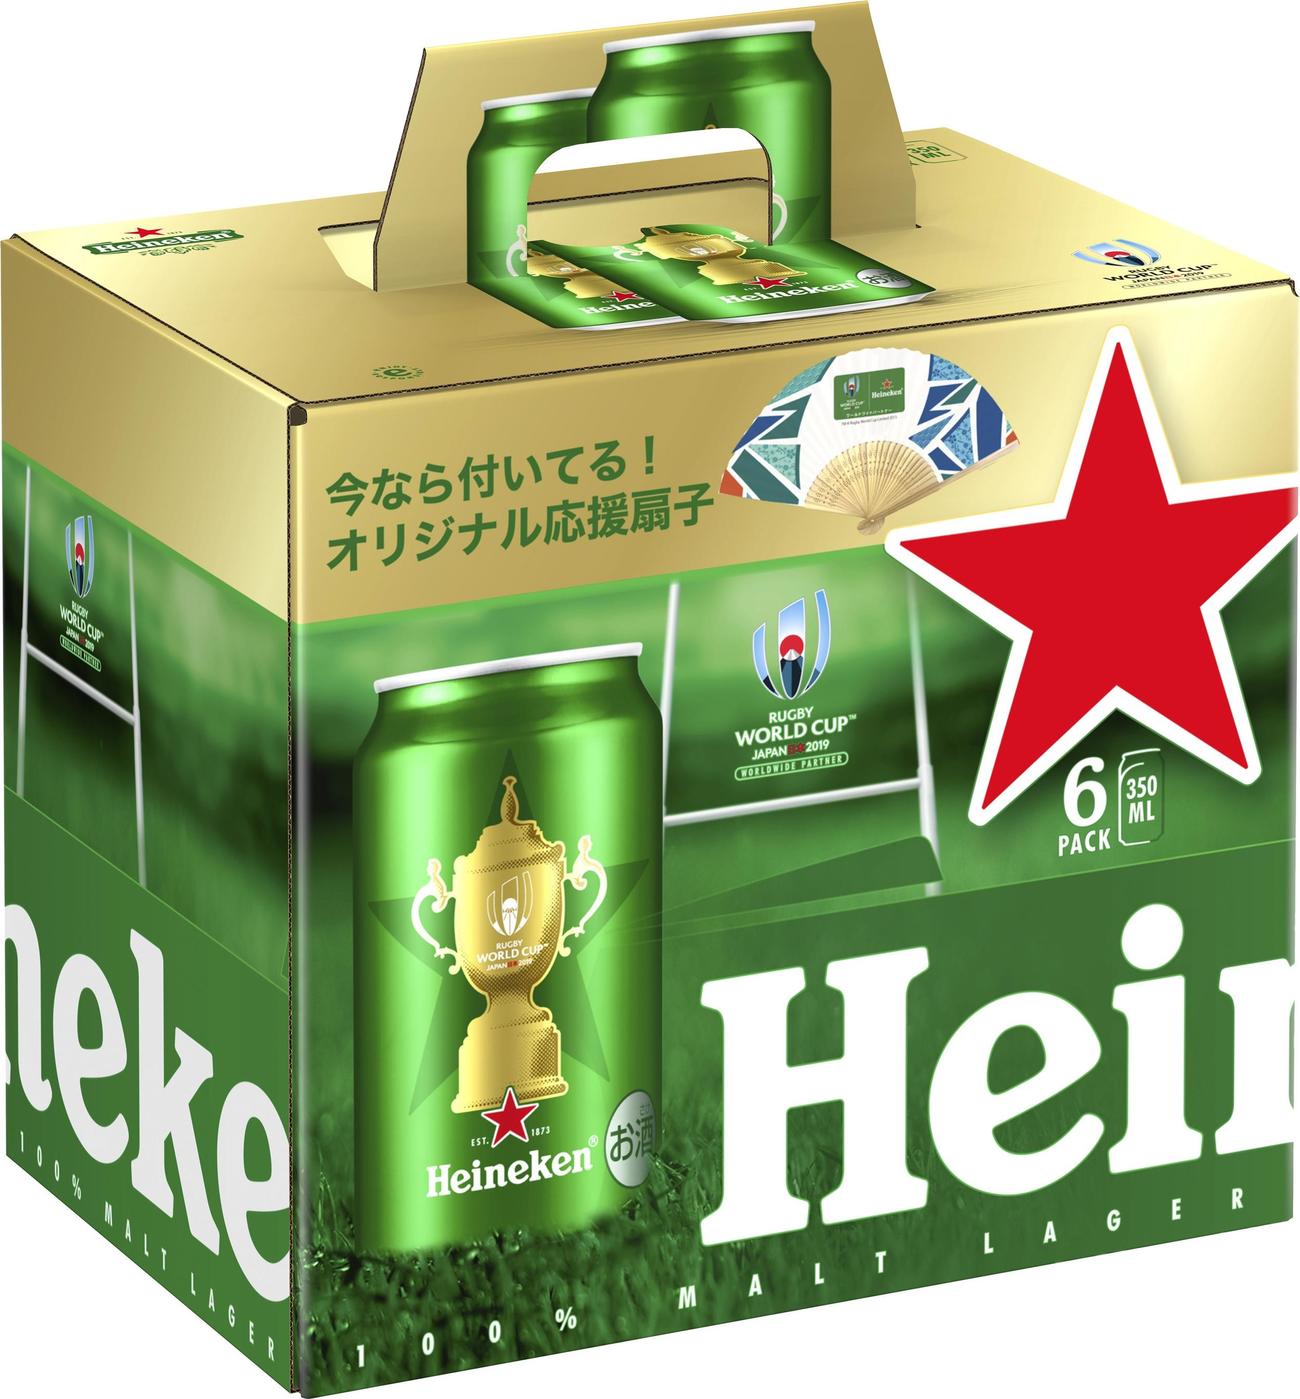 数量限定で発売するハイネケンの6缶BOX（キリンホールディングス提供）